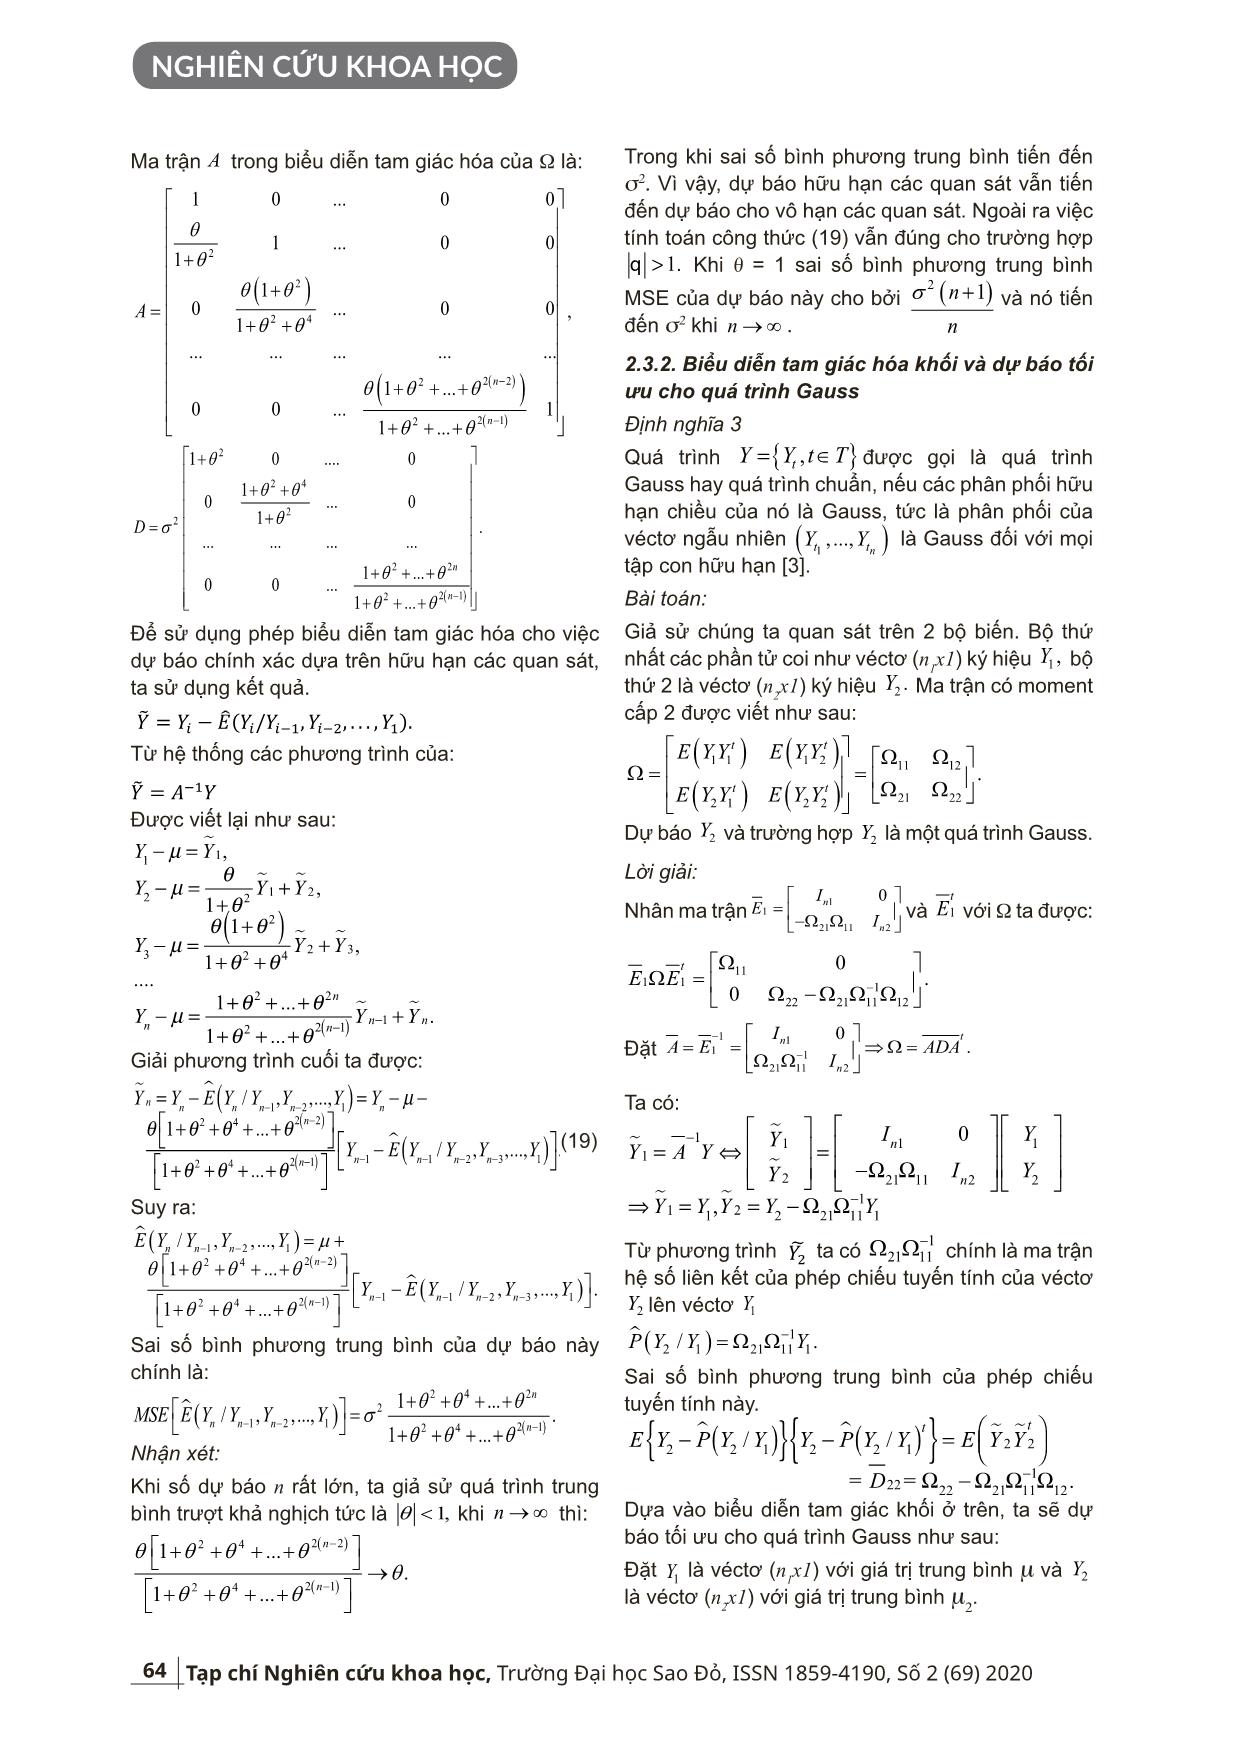 Sử dụng tam giác hóa ma trận trong dự báo quá trình hữu hạn các quan sát MA(1), mở rộng cho dự báo quá trình Gauss trang 4